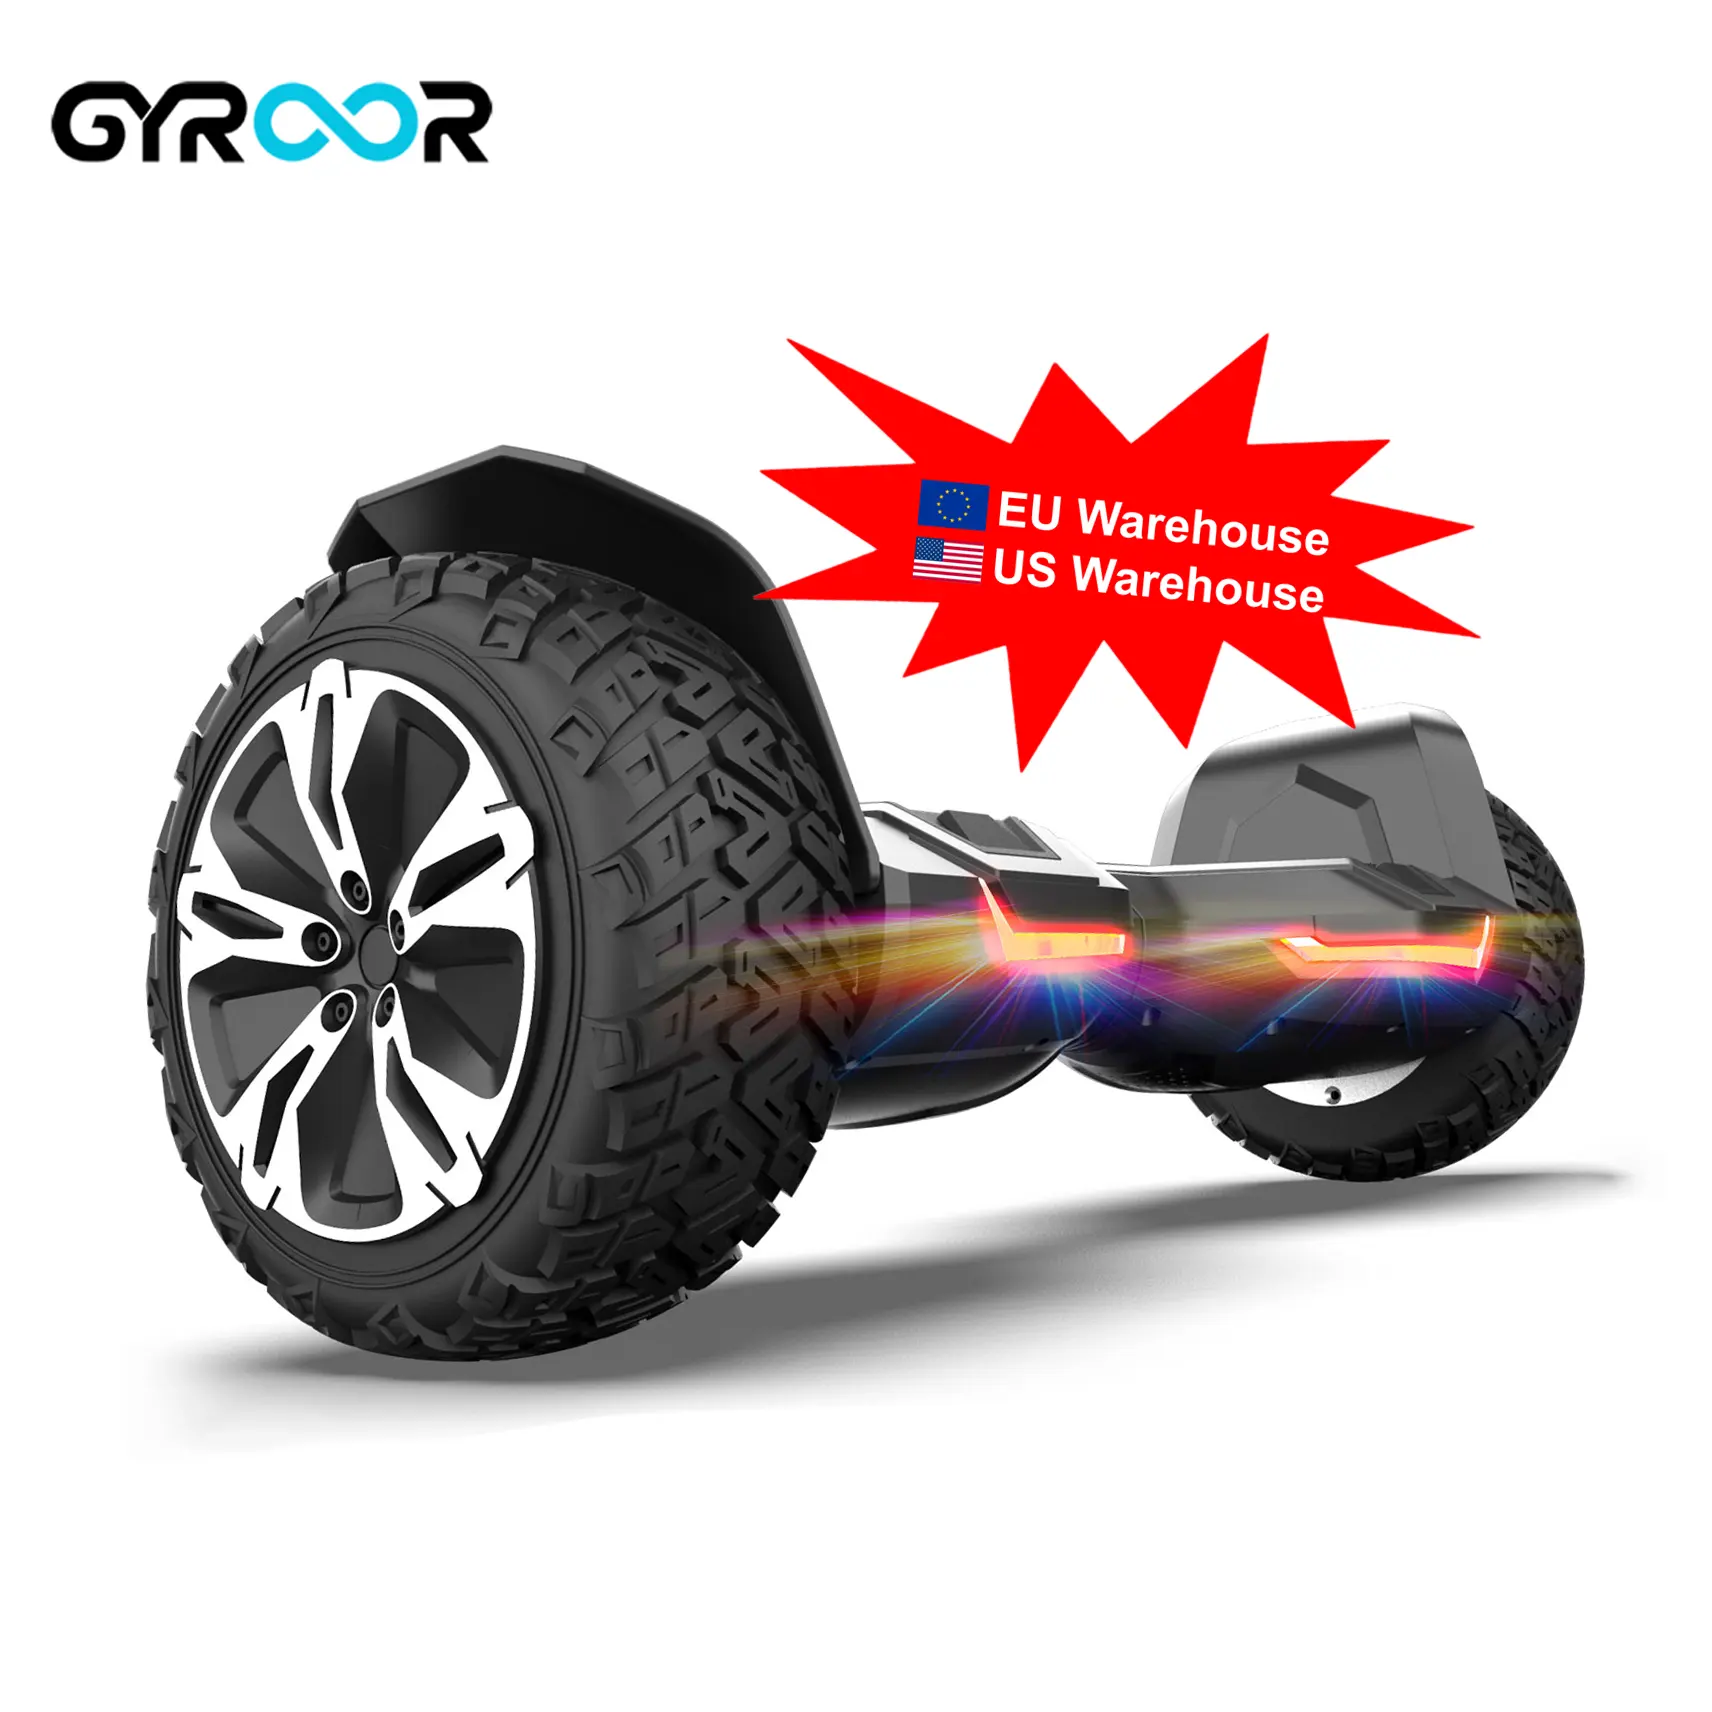 Gyroor 8.5 zoll off road elektrische intelligente selbst ausgleich roller hoverboard mit blue tooth lautsprecher 2 rad hoverboard Fashion